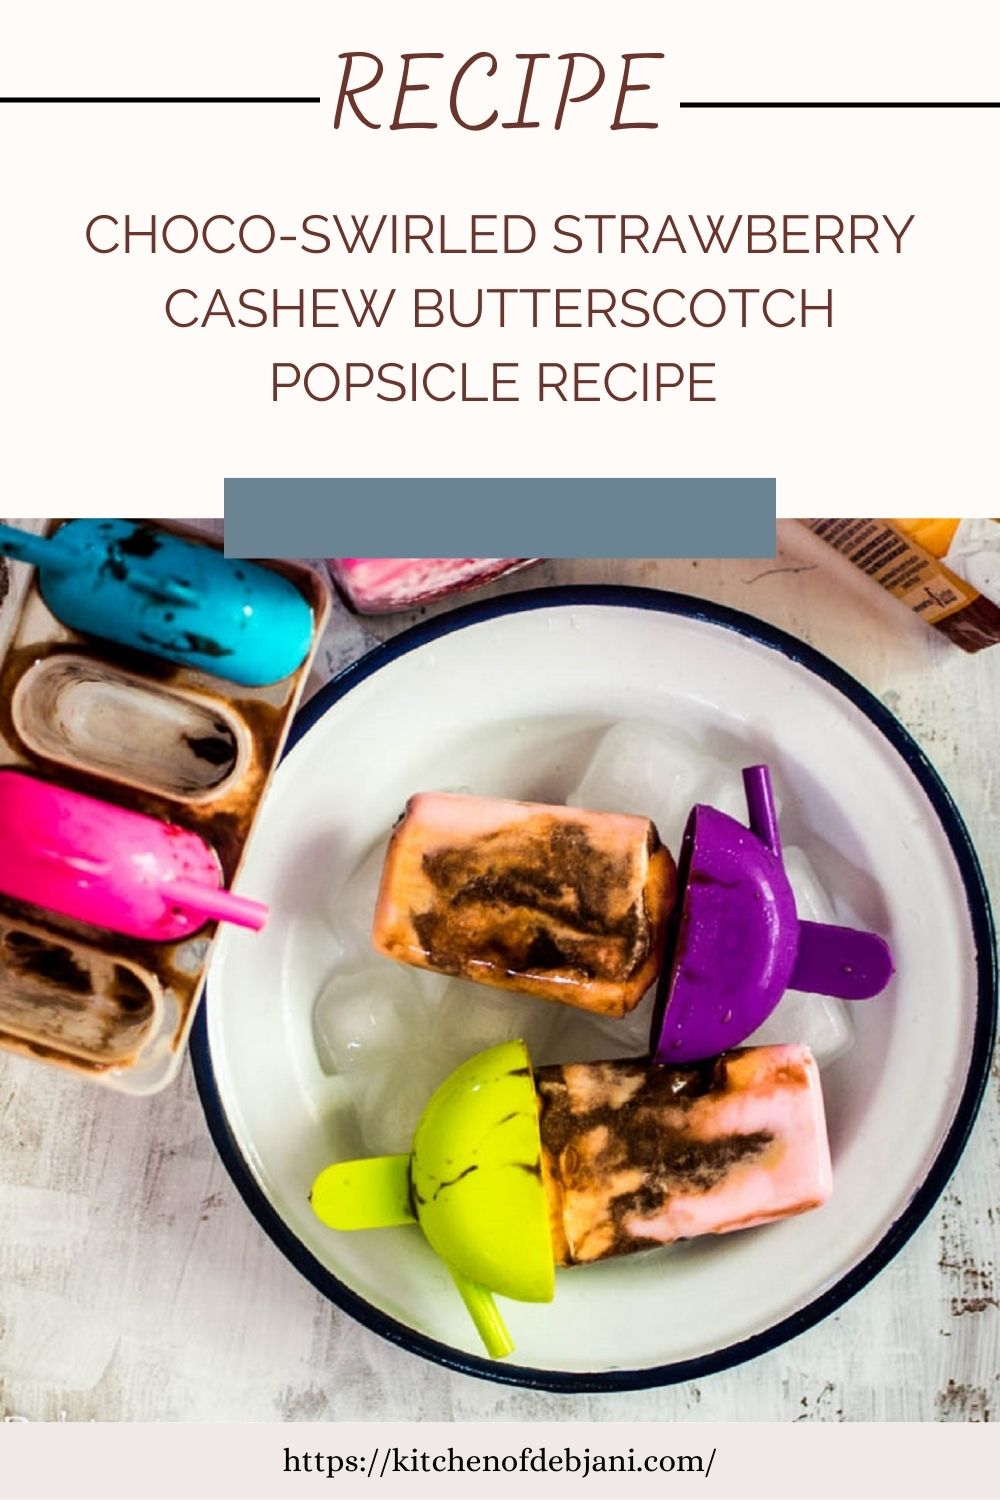 %Choco-Swirled Strawberry Cashew Butterscotch Popsicle recipe pinterest food pin Photo Food Pinterest Pin